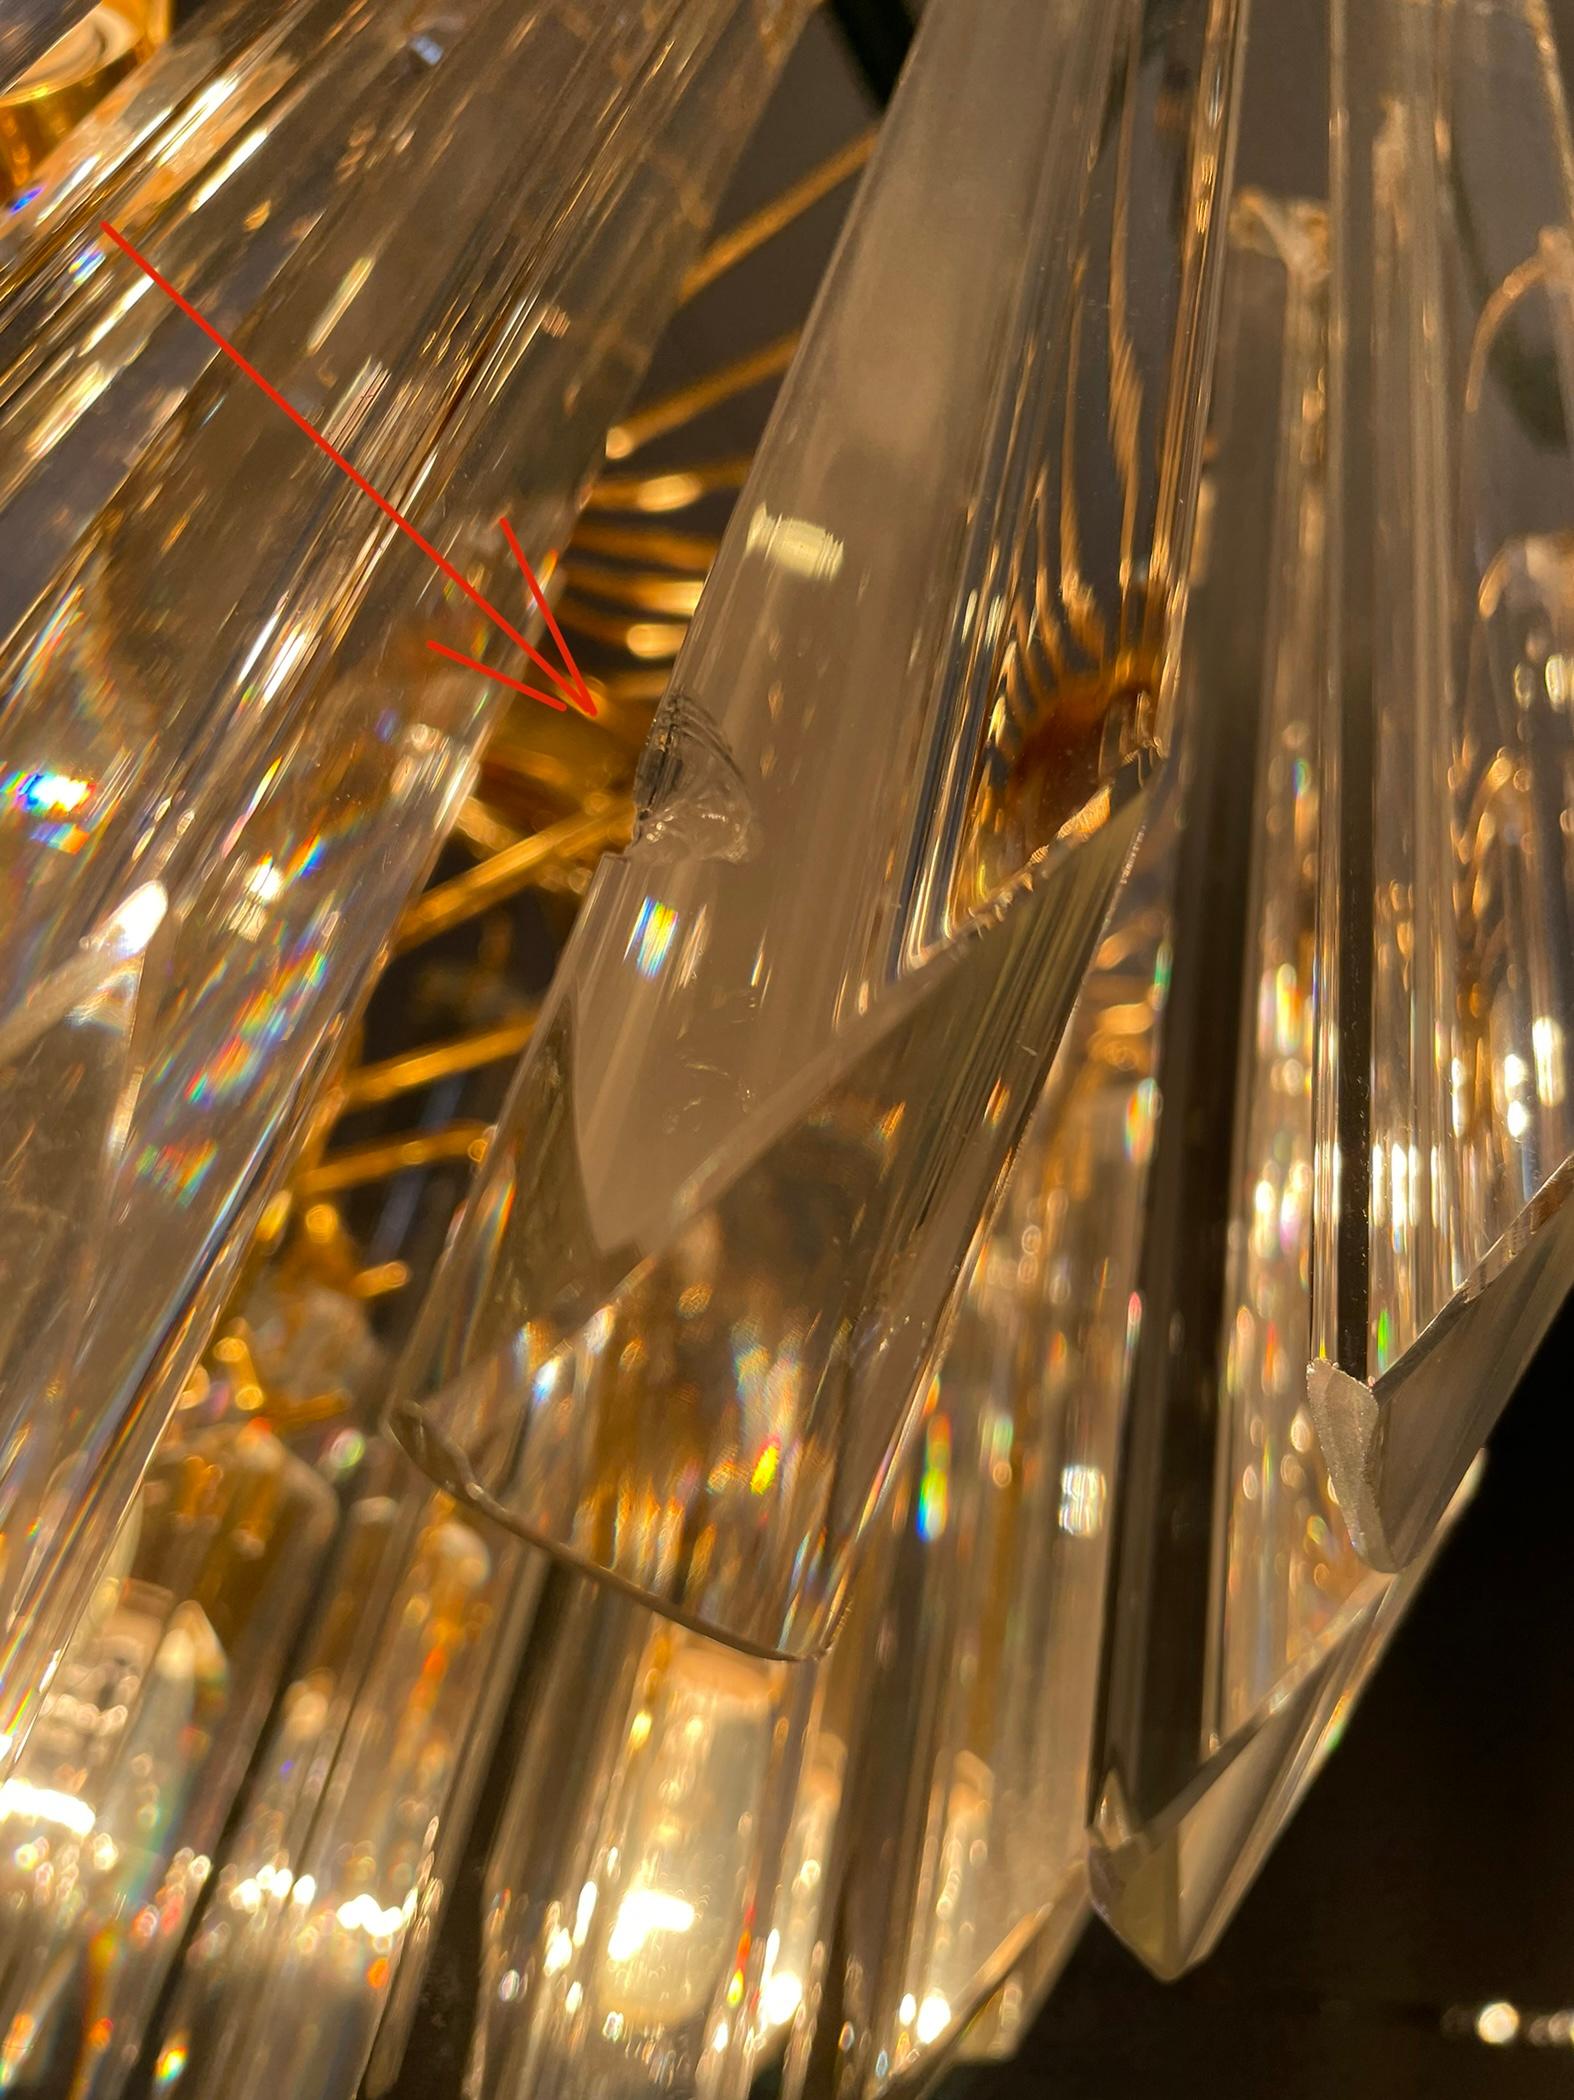 Magnifique lustre de Paolo Venini avec des gouttelettes de verre taillé et une monture en laiton.

Le lustre émet une lumière spectaculaire et est en bon état.

Il faut 6x E27  les ampoules électriques.

1970s -  Italie

Dimensions :
Hauteur :